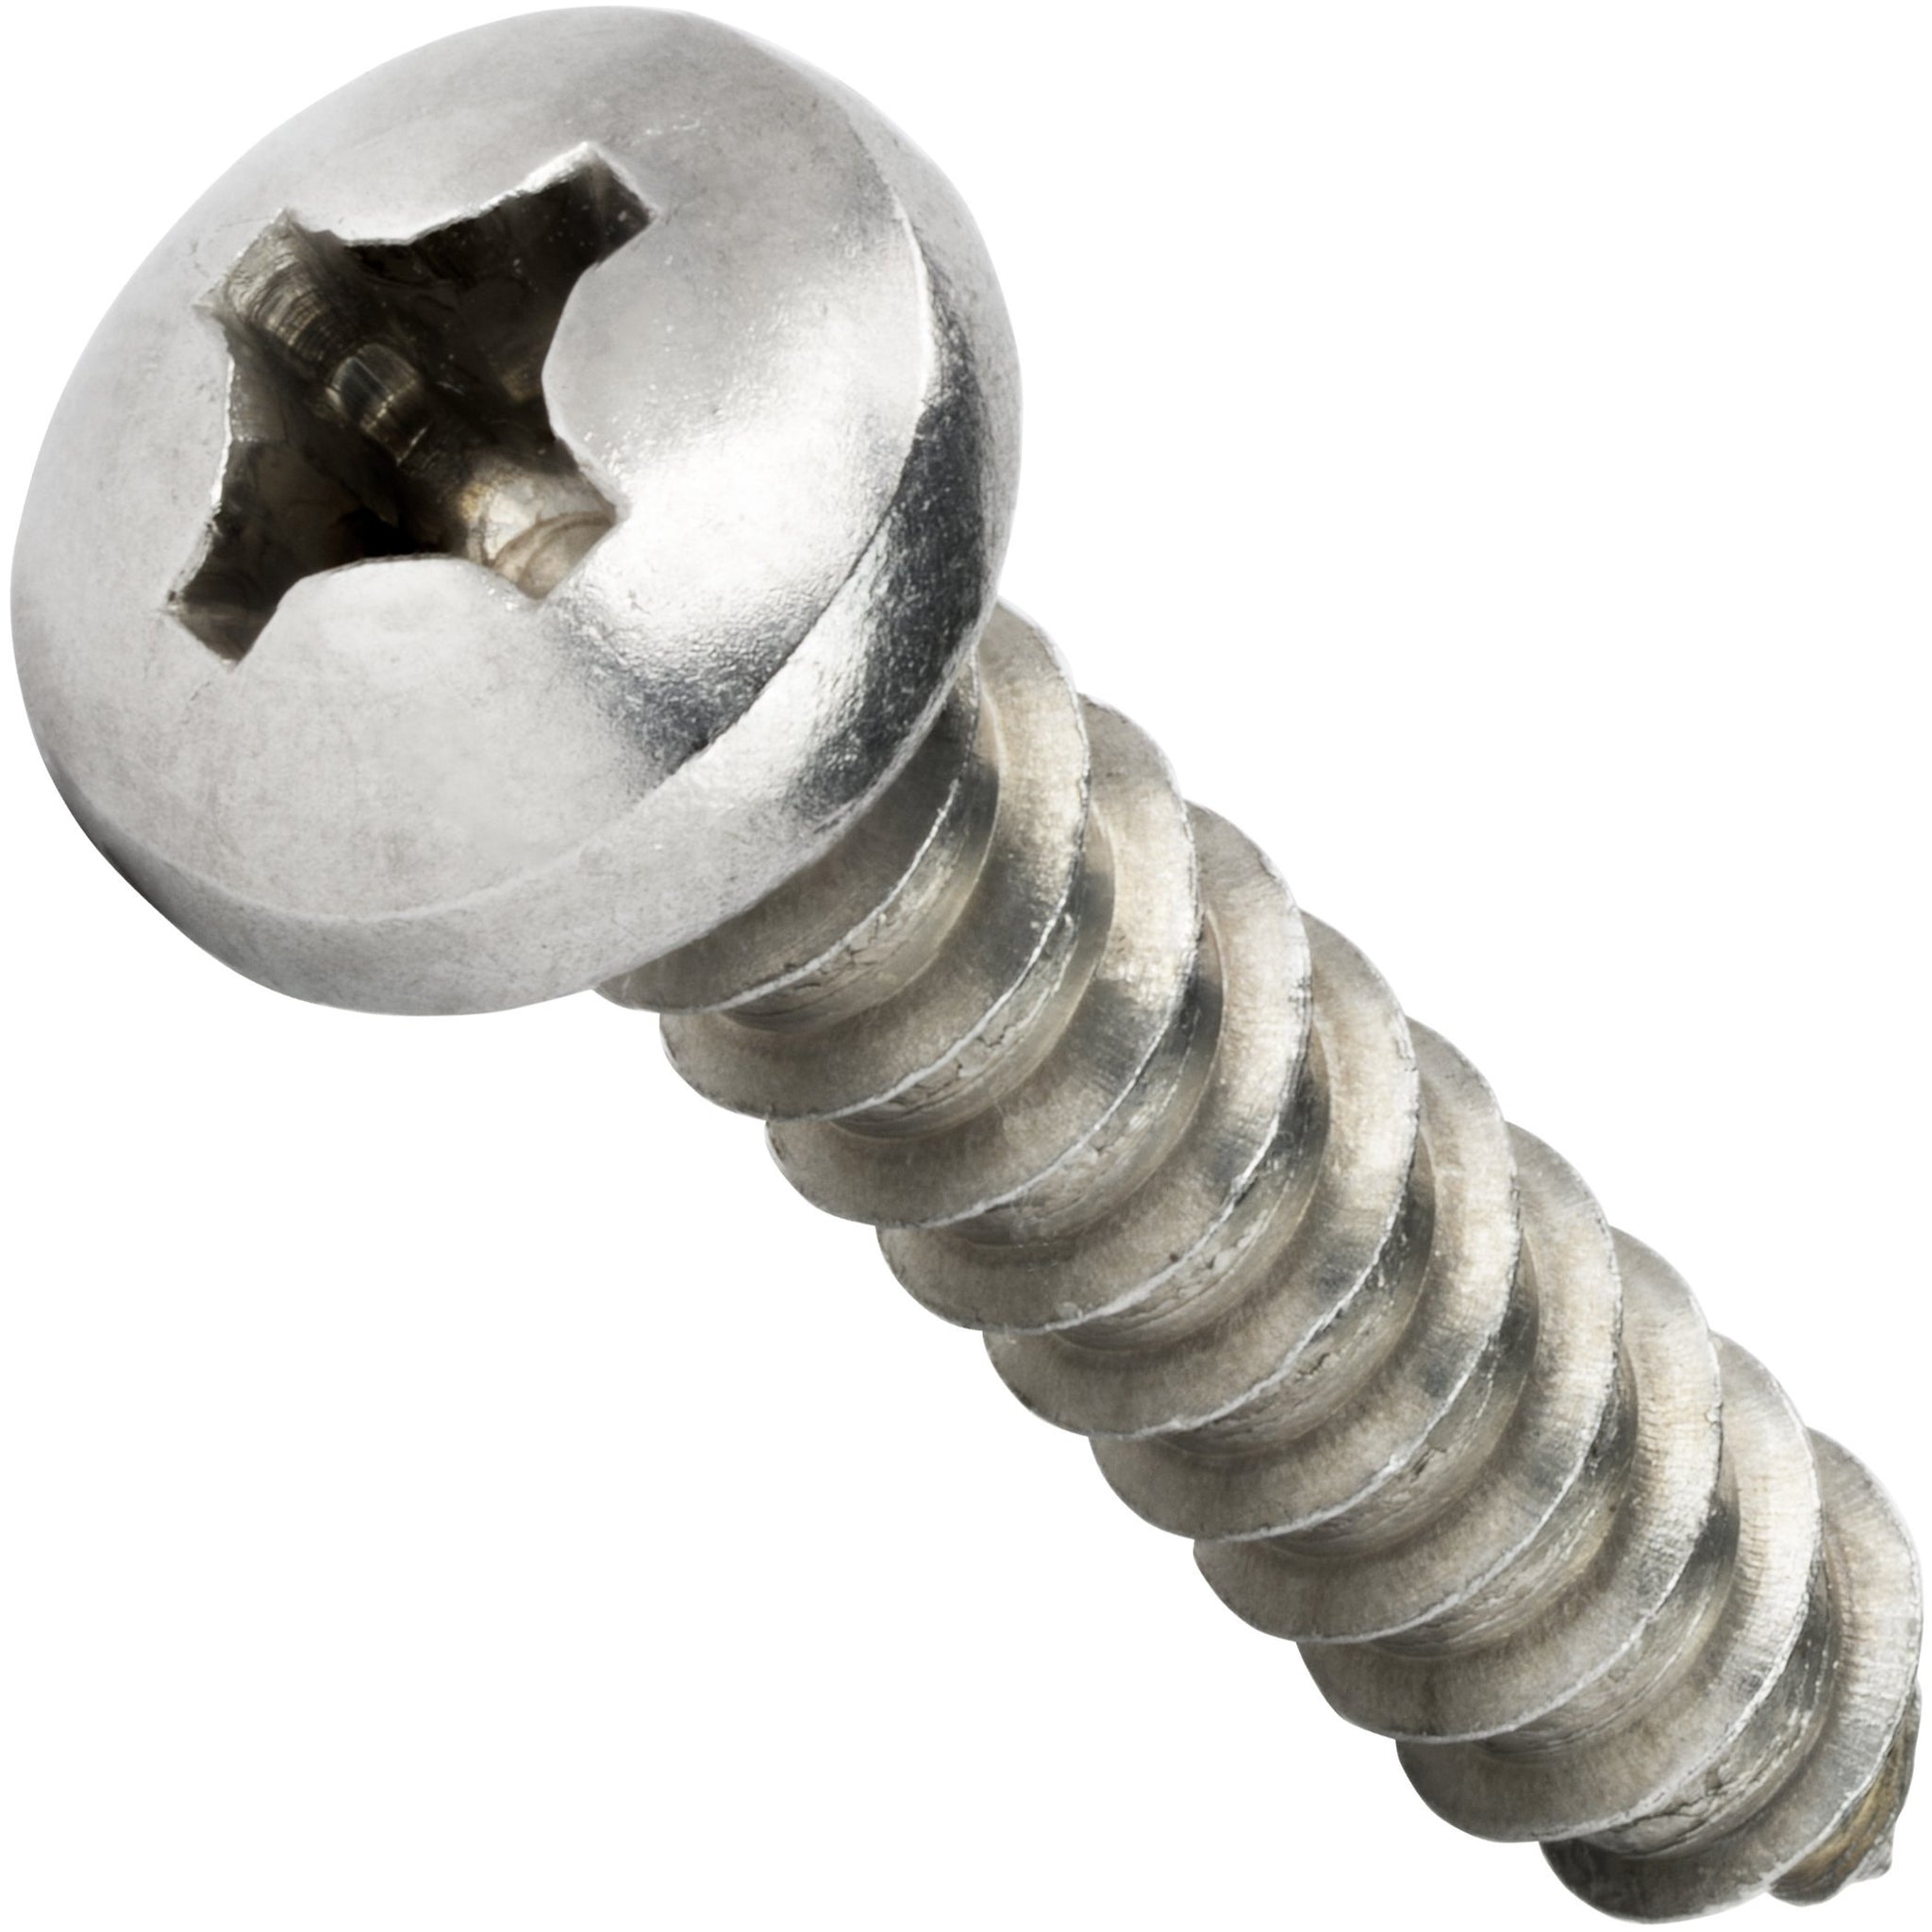 3 stainless steel screws